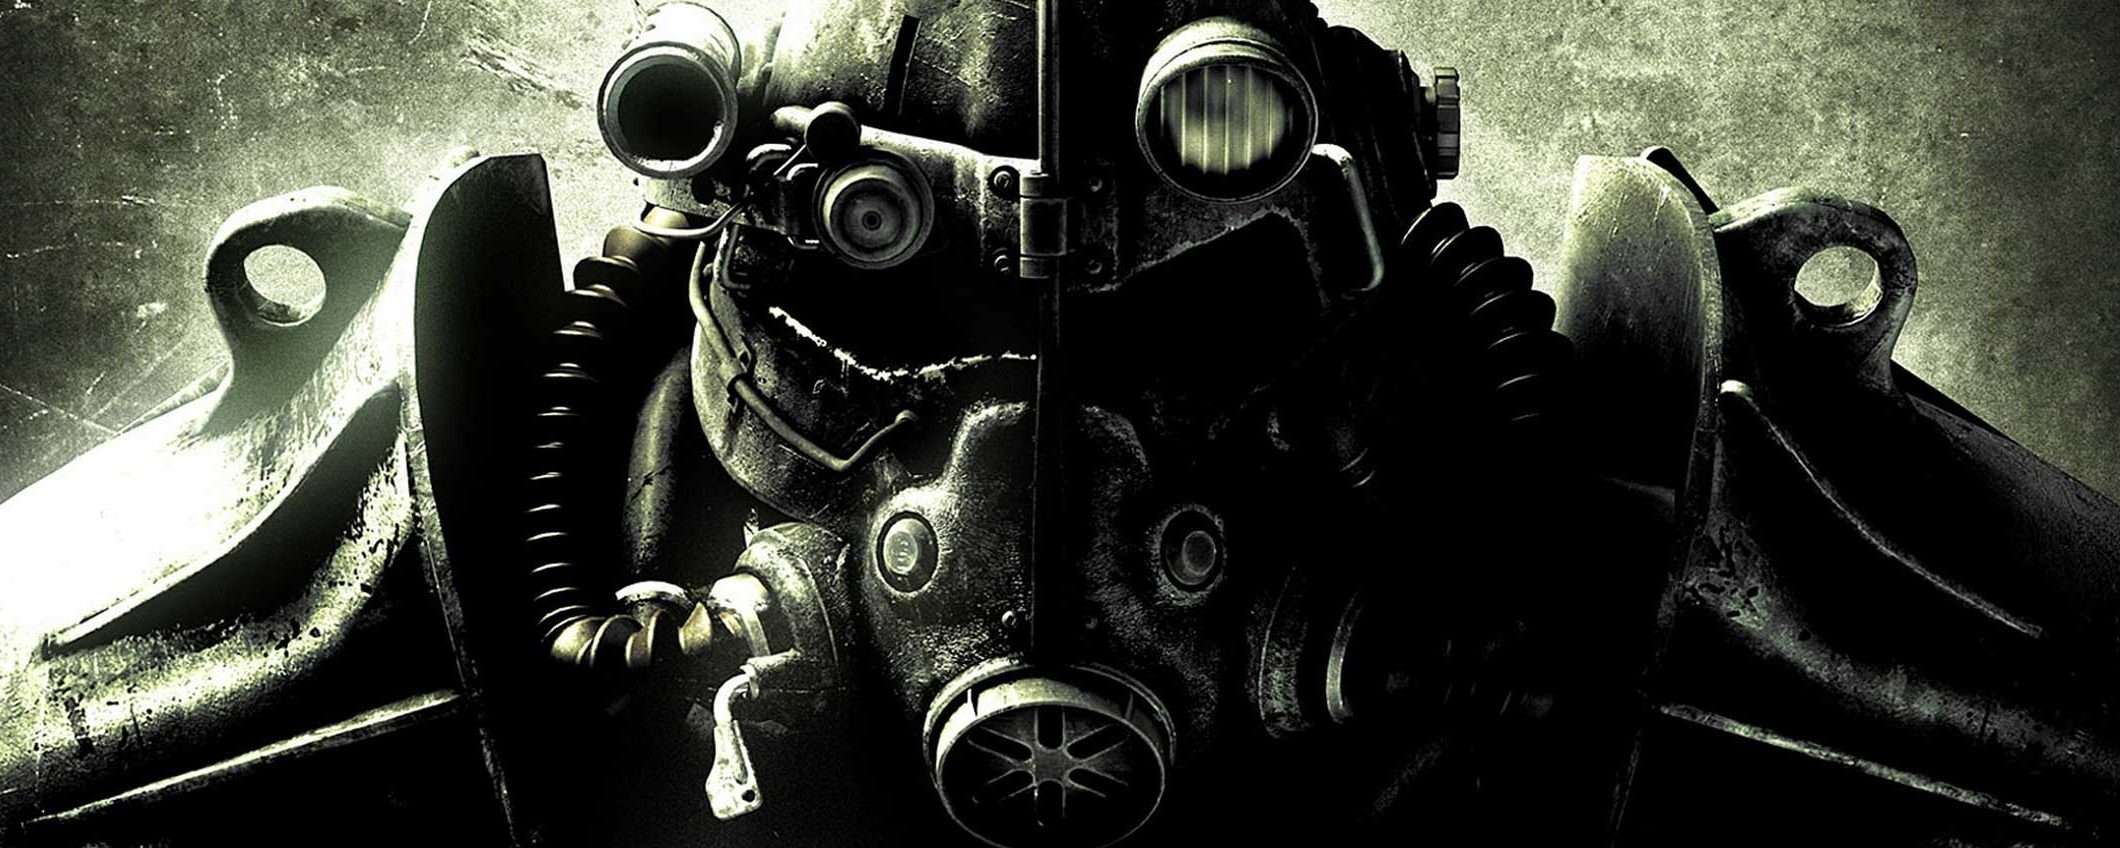 Fallout 3 gratis su PC, ma per pochi giorni